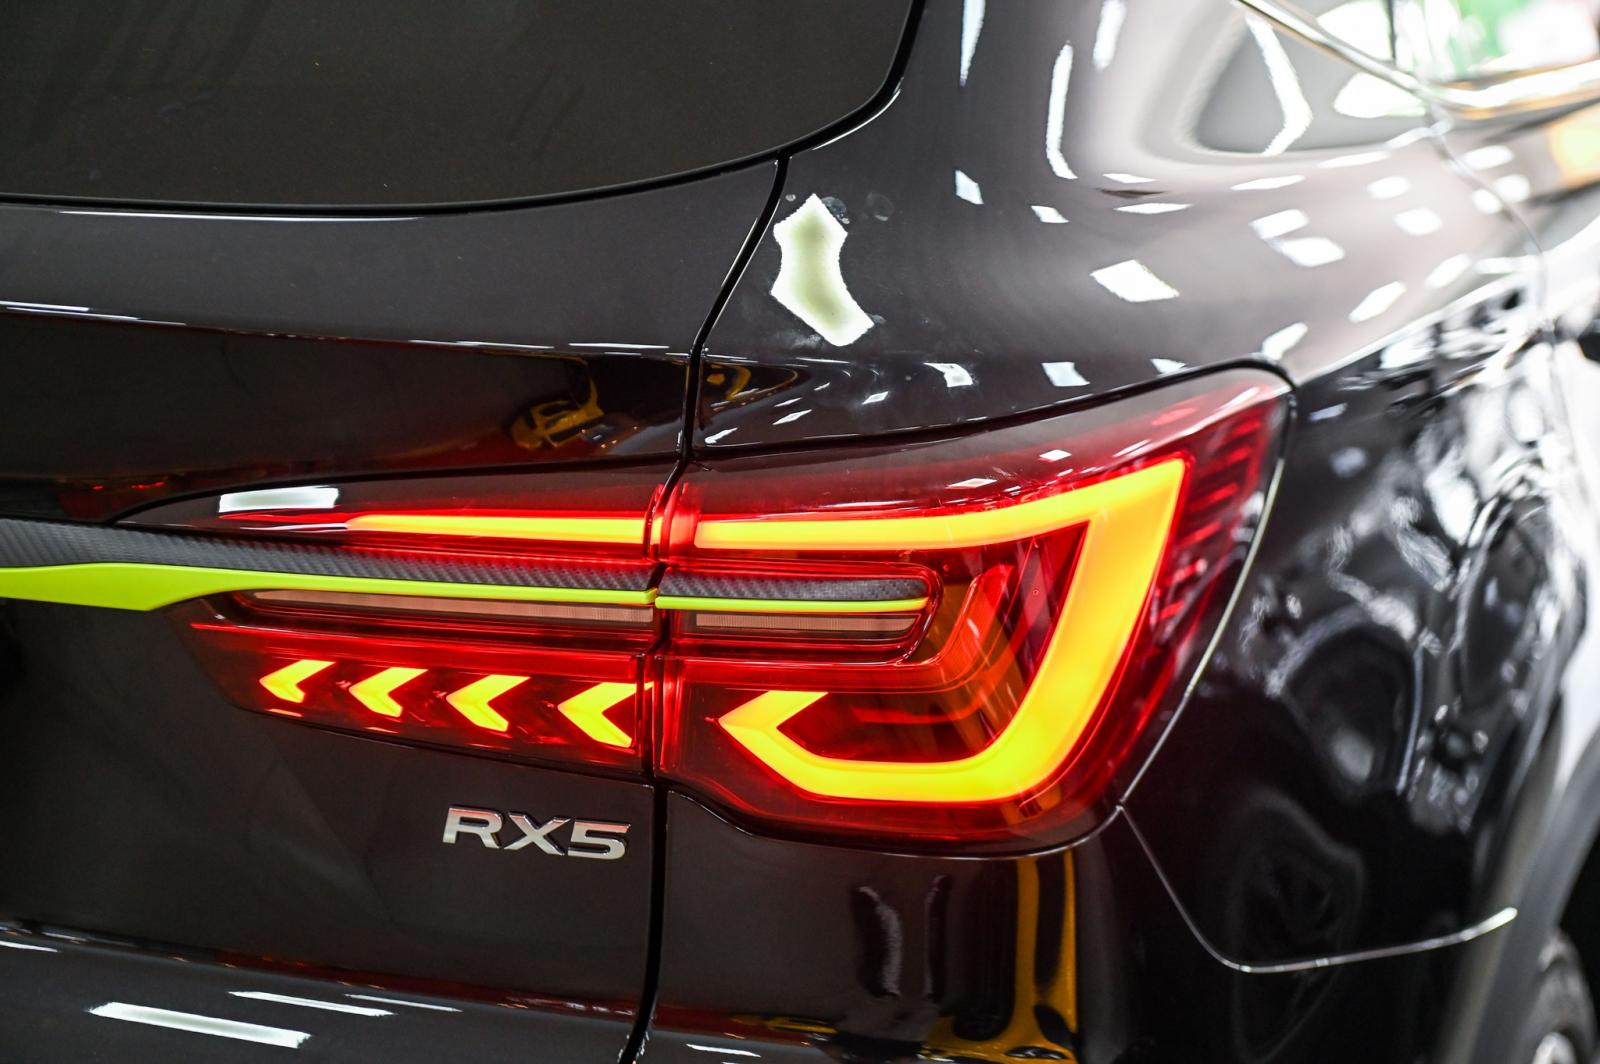 Đèn hậu xe MG RX5.